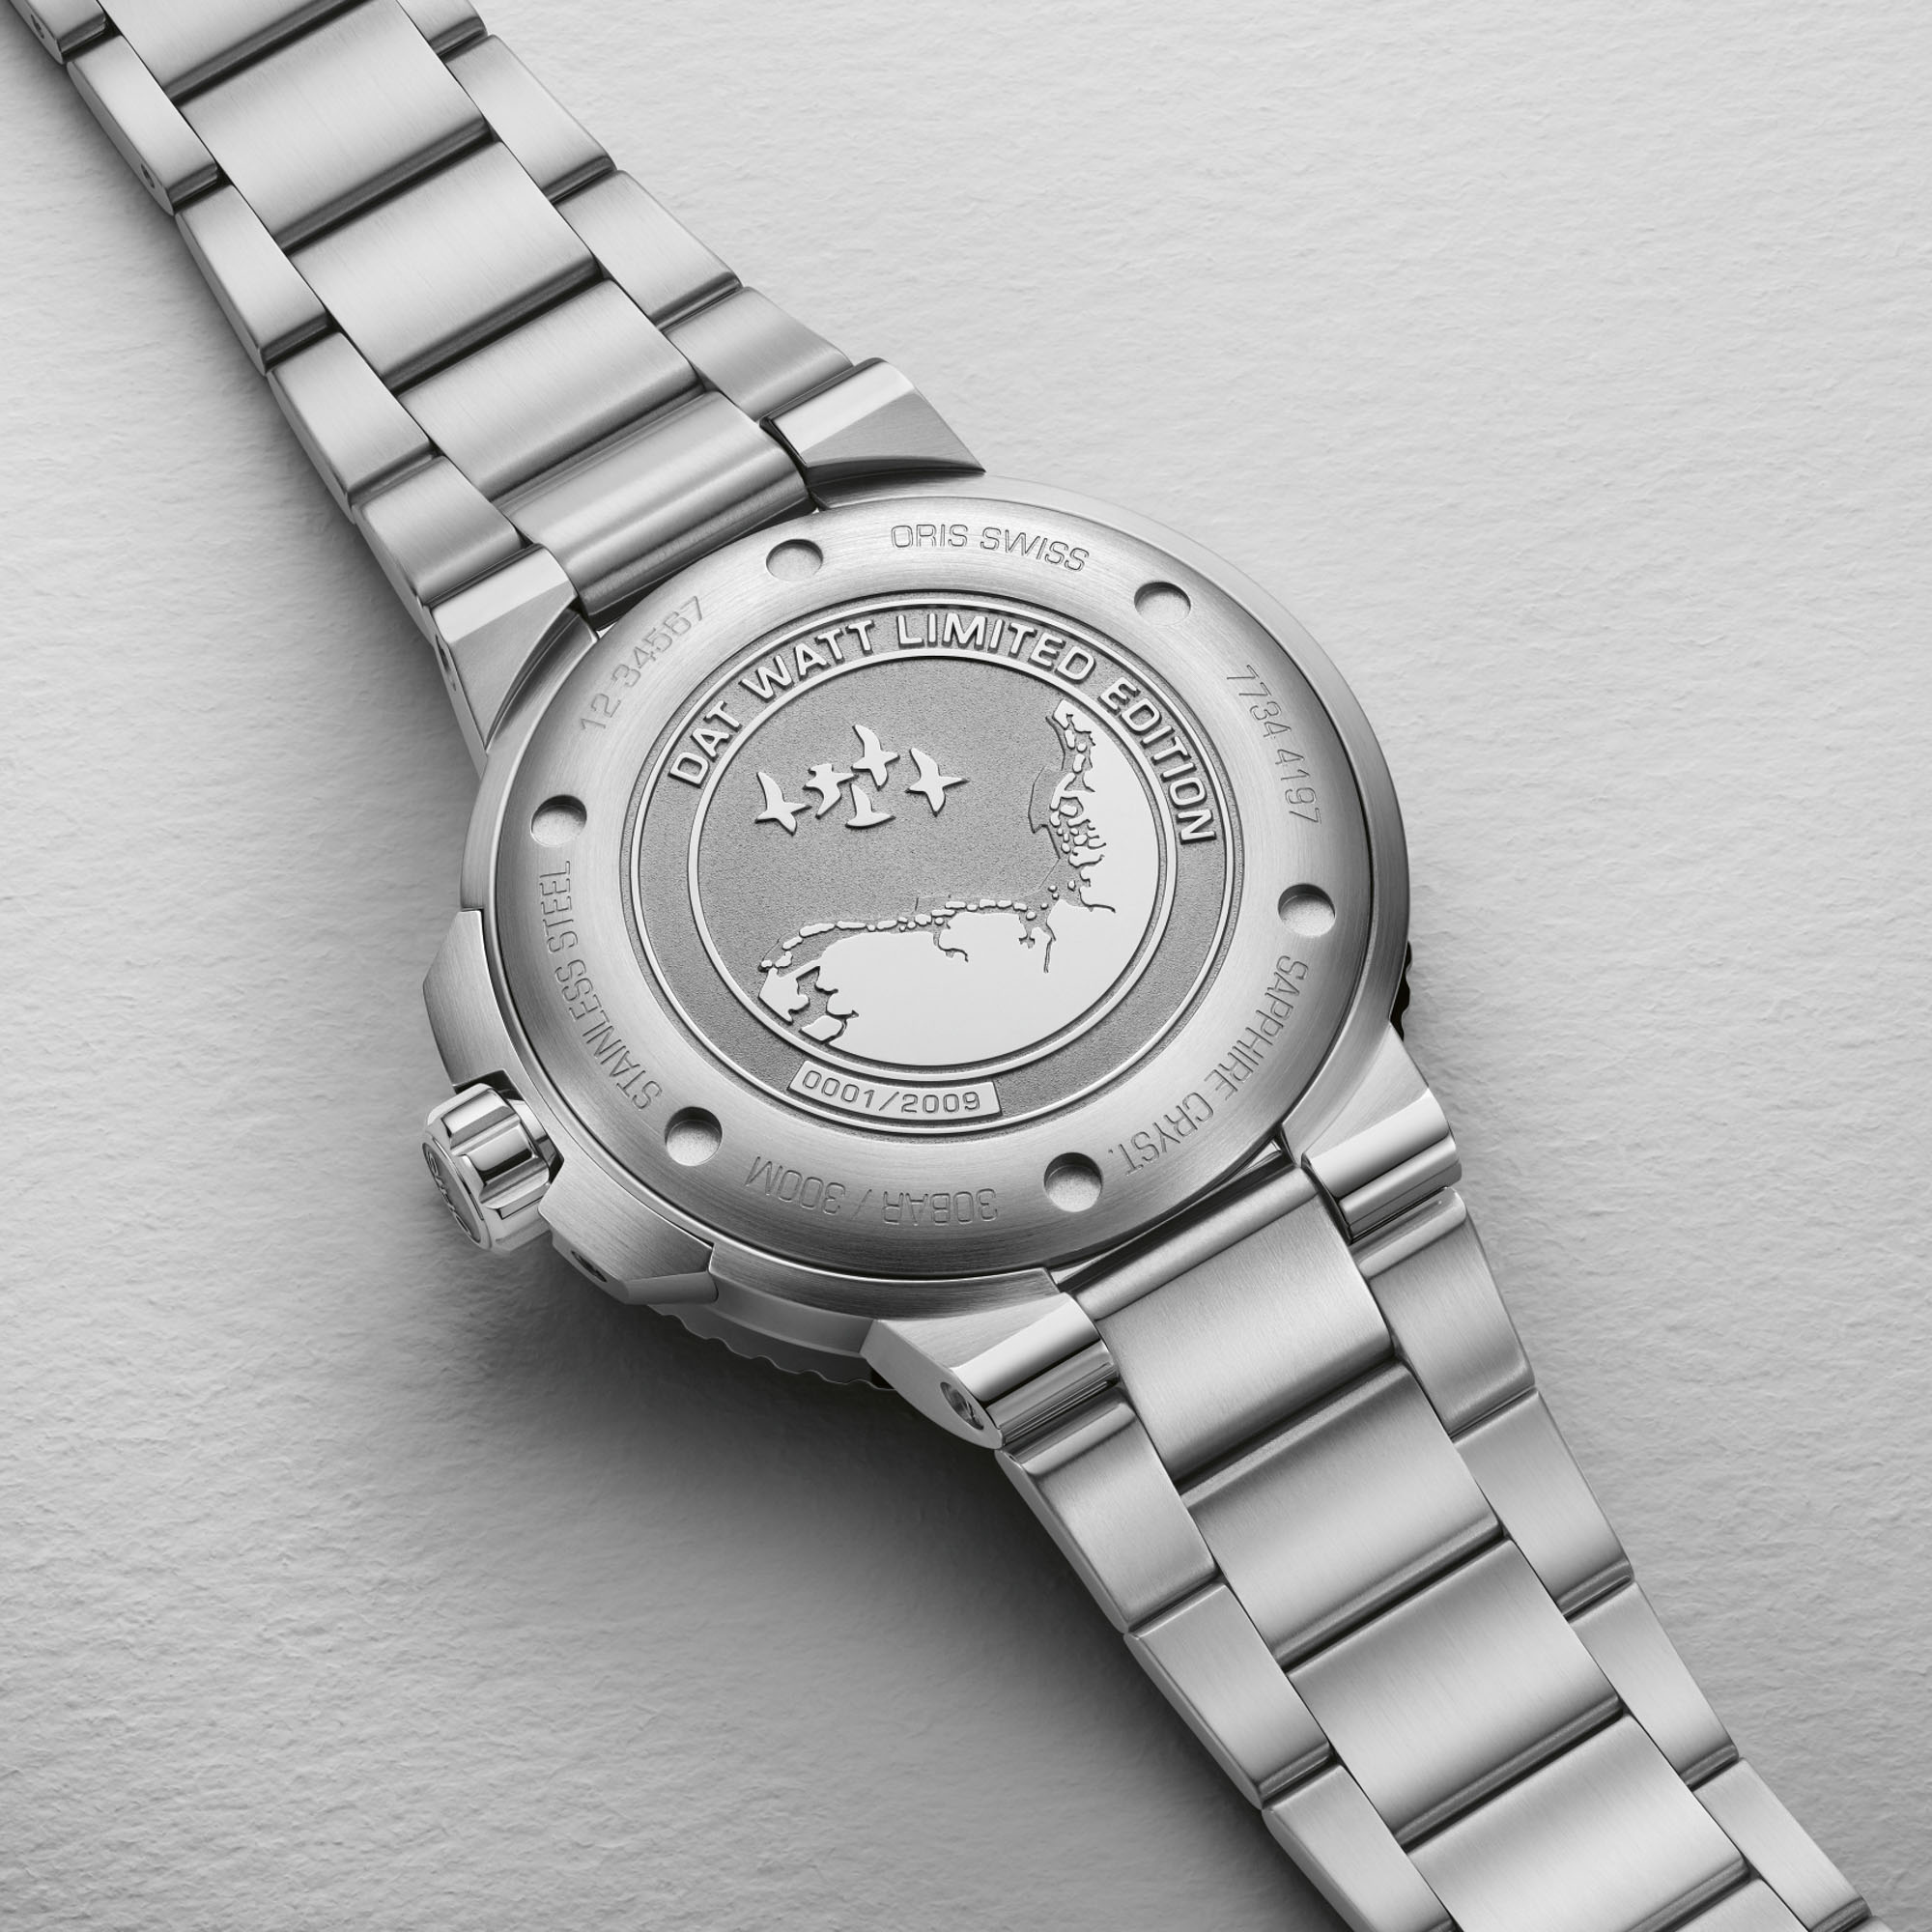 Новый выпуск: Часы Oris Aquis Dat Watt Limited Edition II